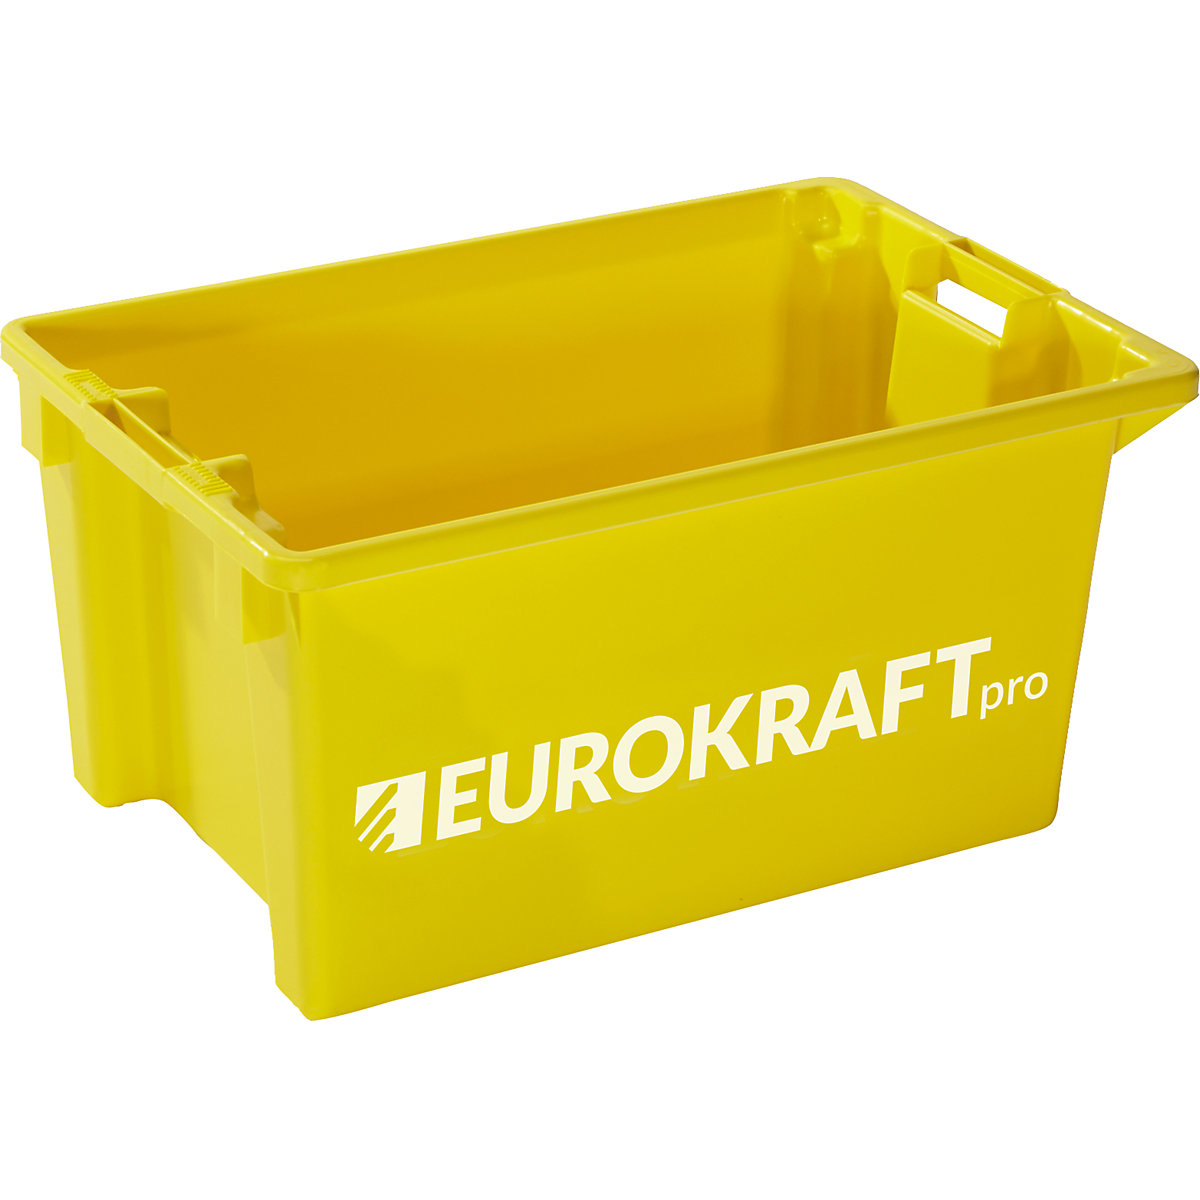 Zasučni zaboj za zlaganje – eurokraft pro, prostornina 50 l, DE 3 kosi, rumena